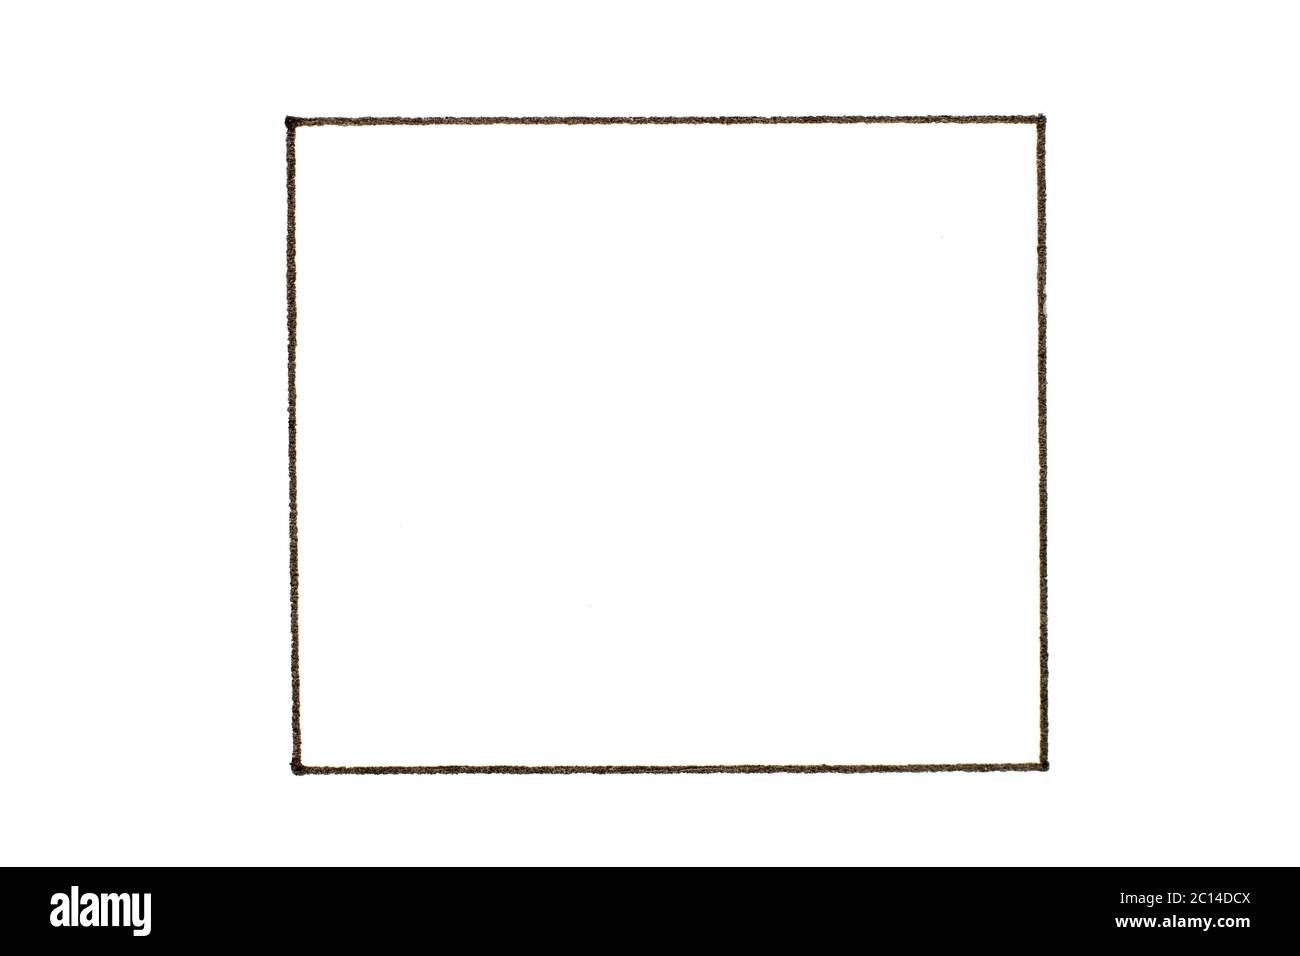 Hình vuông đen với đường viền là một trong những biểu tượng thị giác cơ bản và được sử dụng rộng rãi trong thiết kế. Xem ảnh liên quan đến từ khóa \